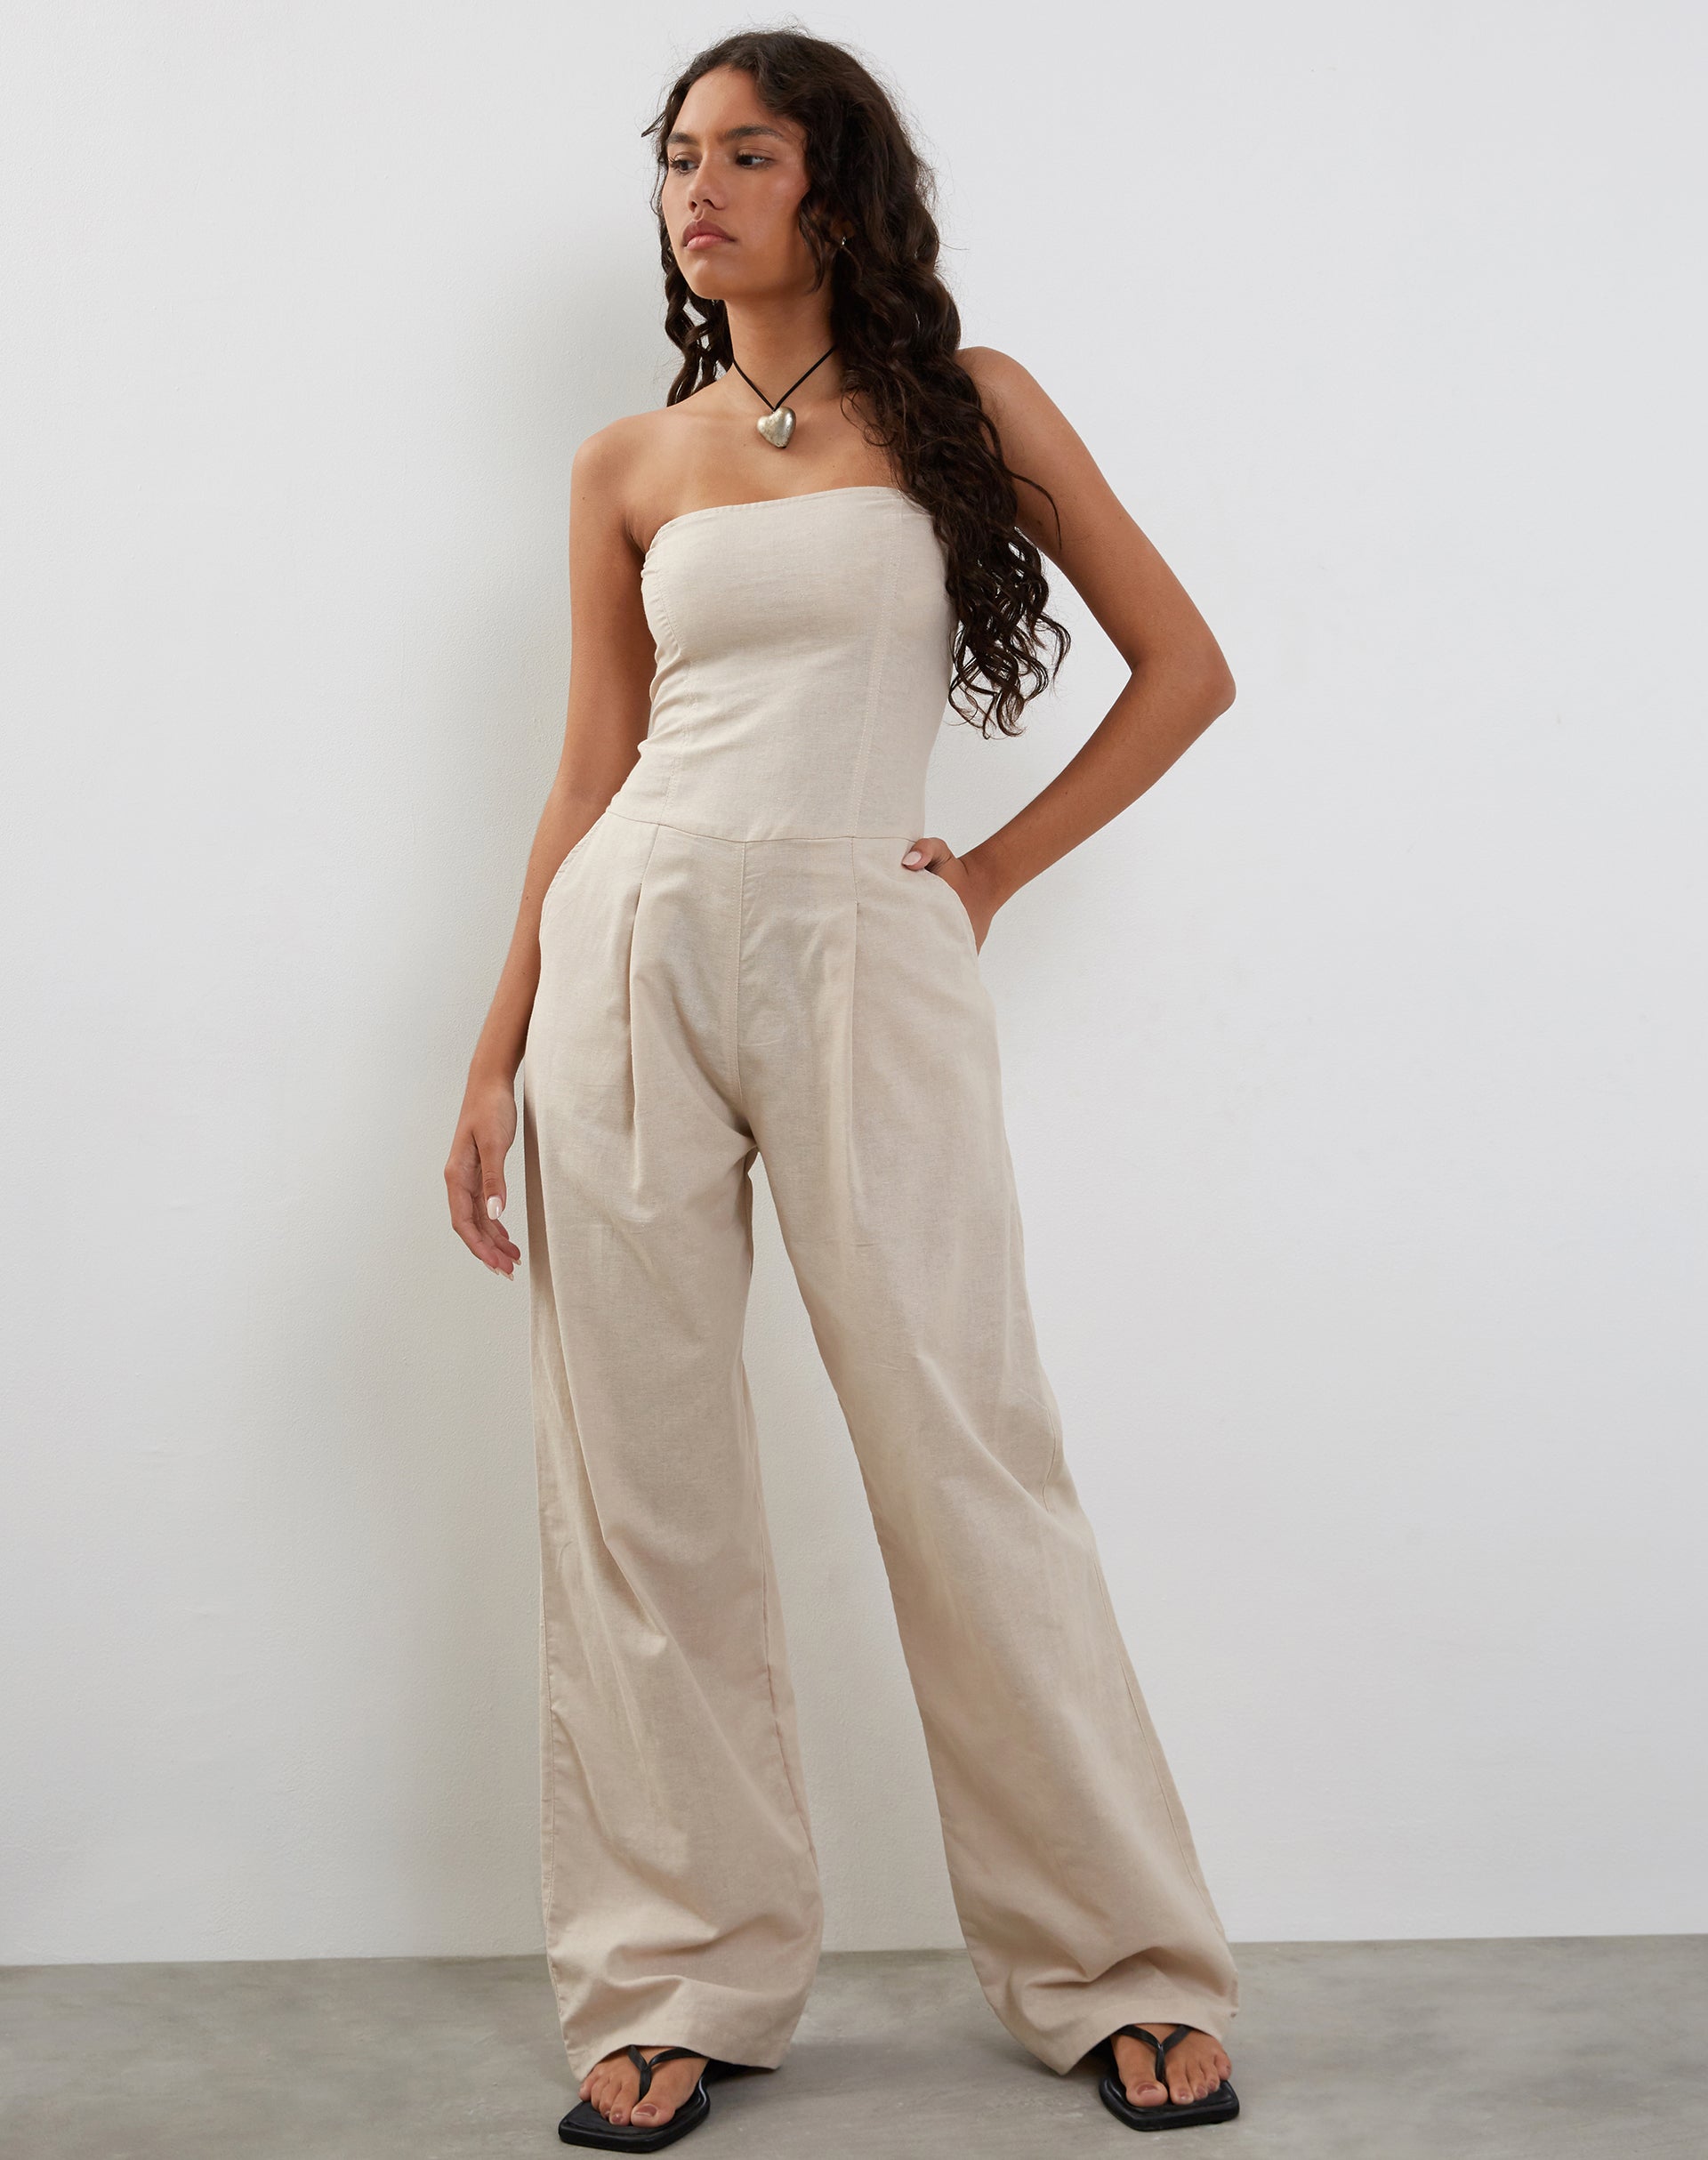 ELFINDEA Capri Pants for Women Banquet Dress Jumpsuit Sexy Hanging Neck Trousers  White M - Walmart.com